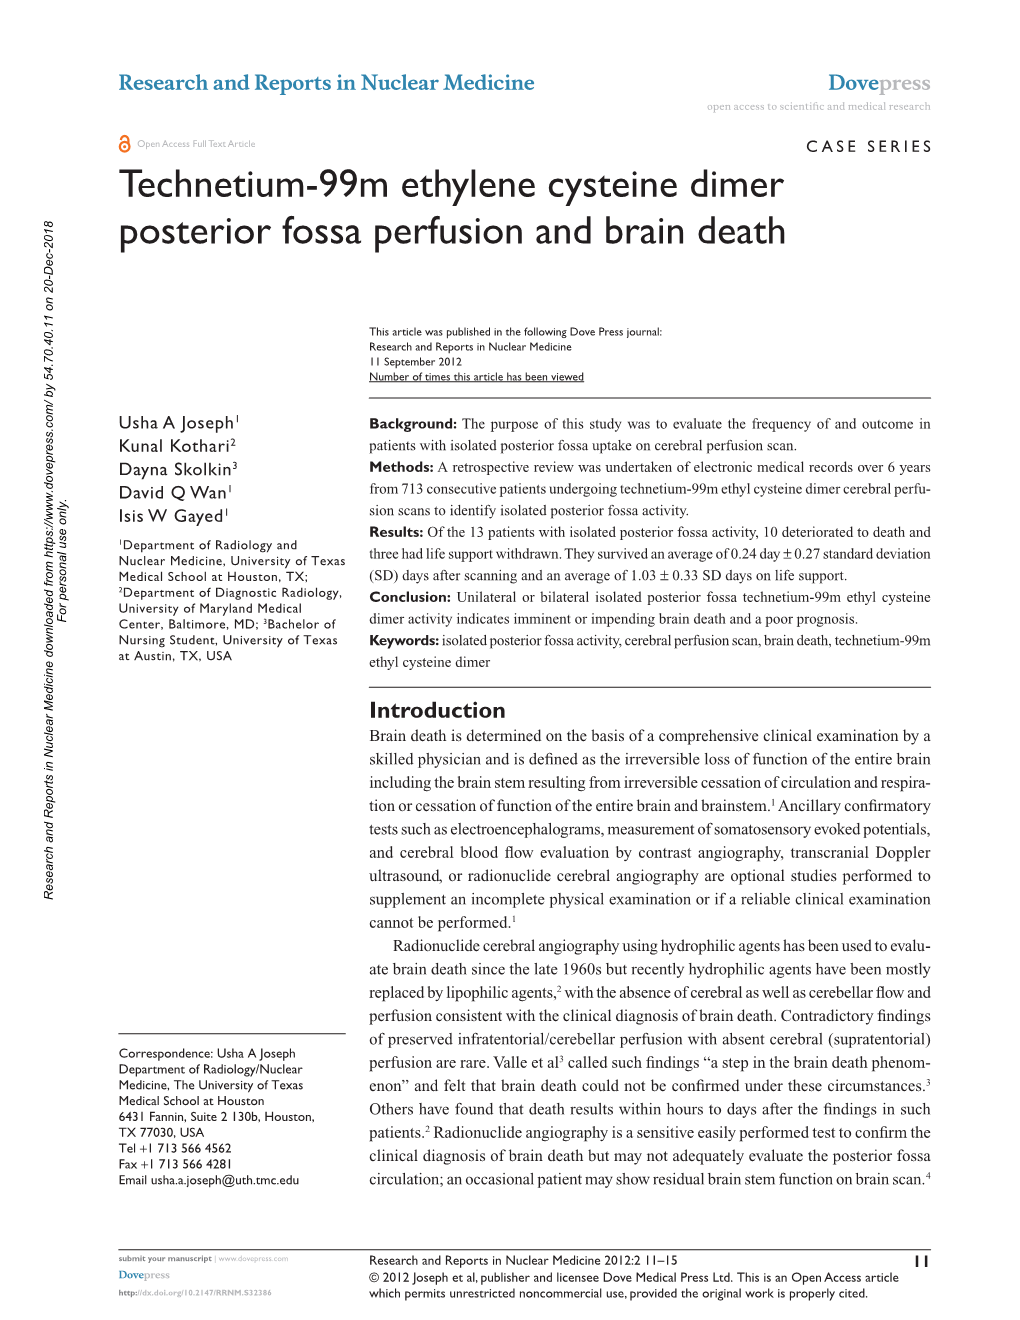 Technetium-99M Ethylene Cysteine Dimer Posterior Fossa Perfusion and Brain Death